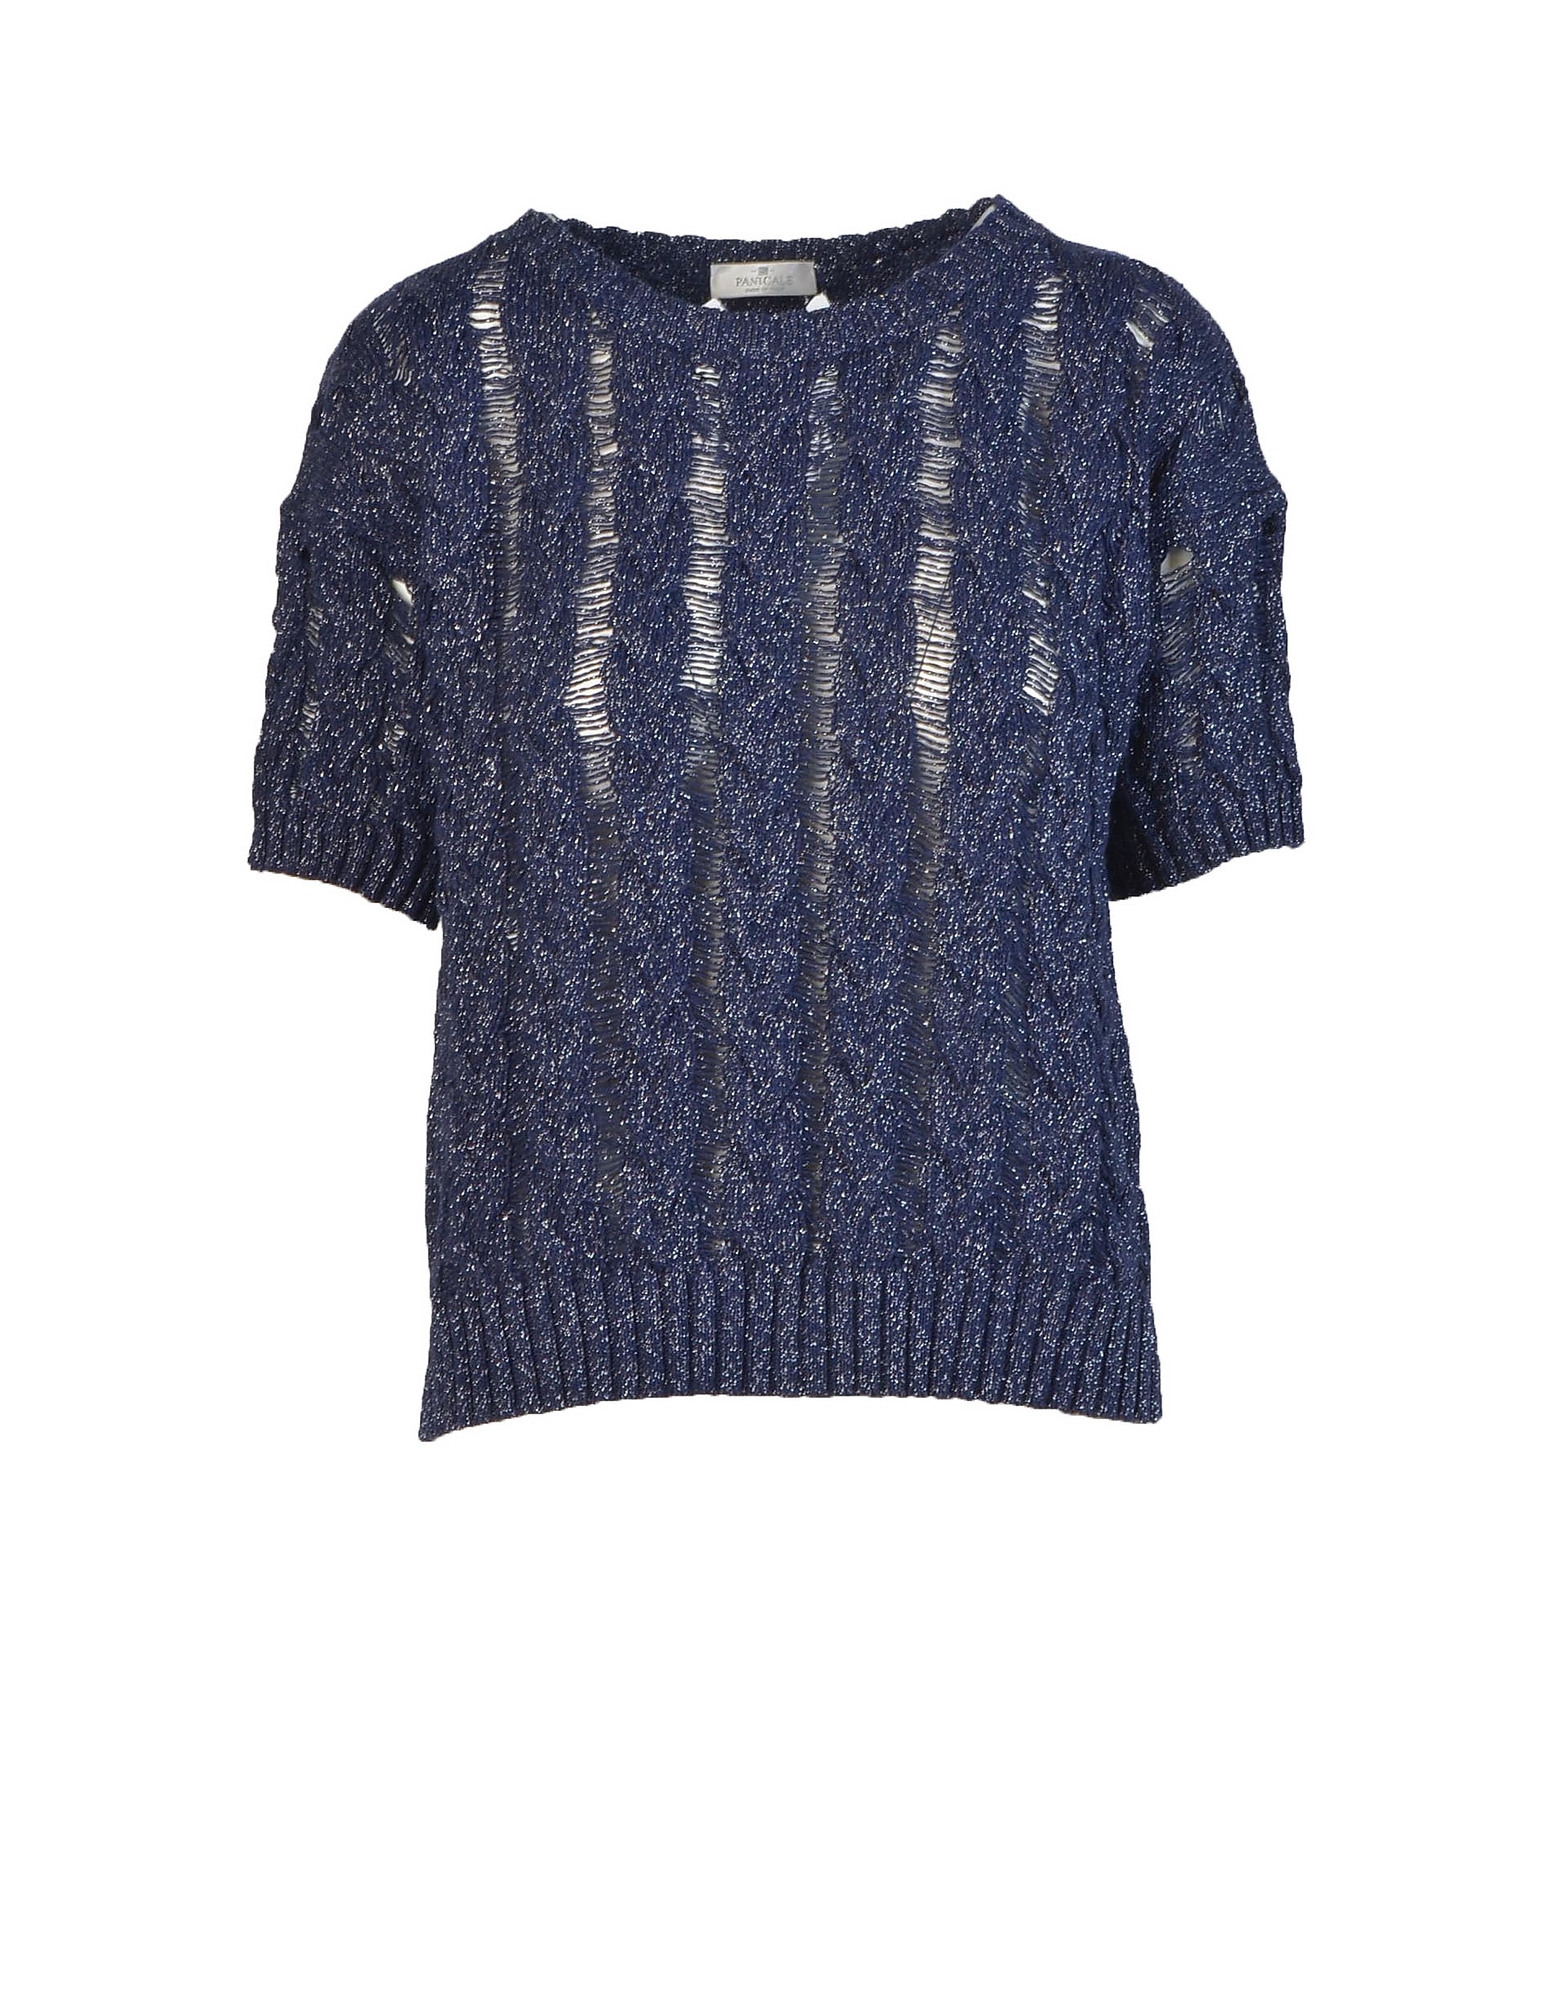 Panicale Knitwear Women's Blue Sweater